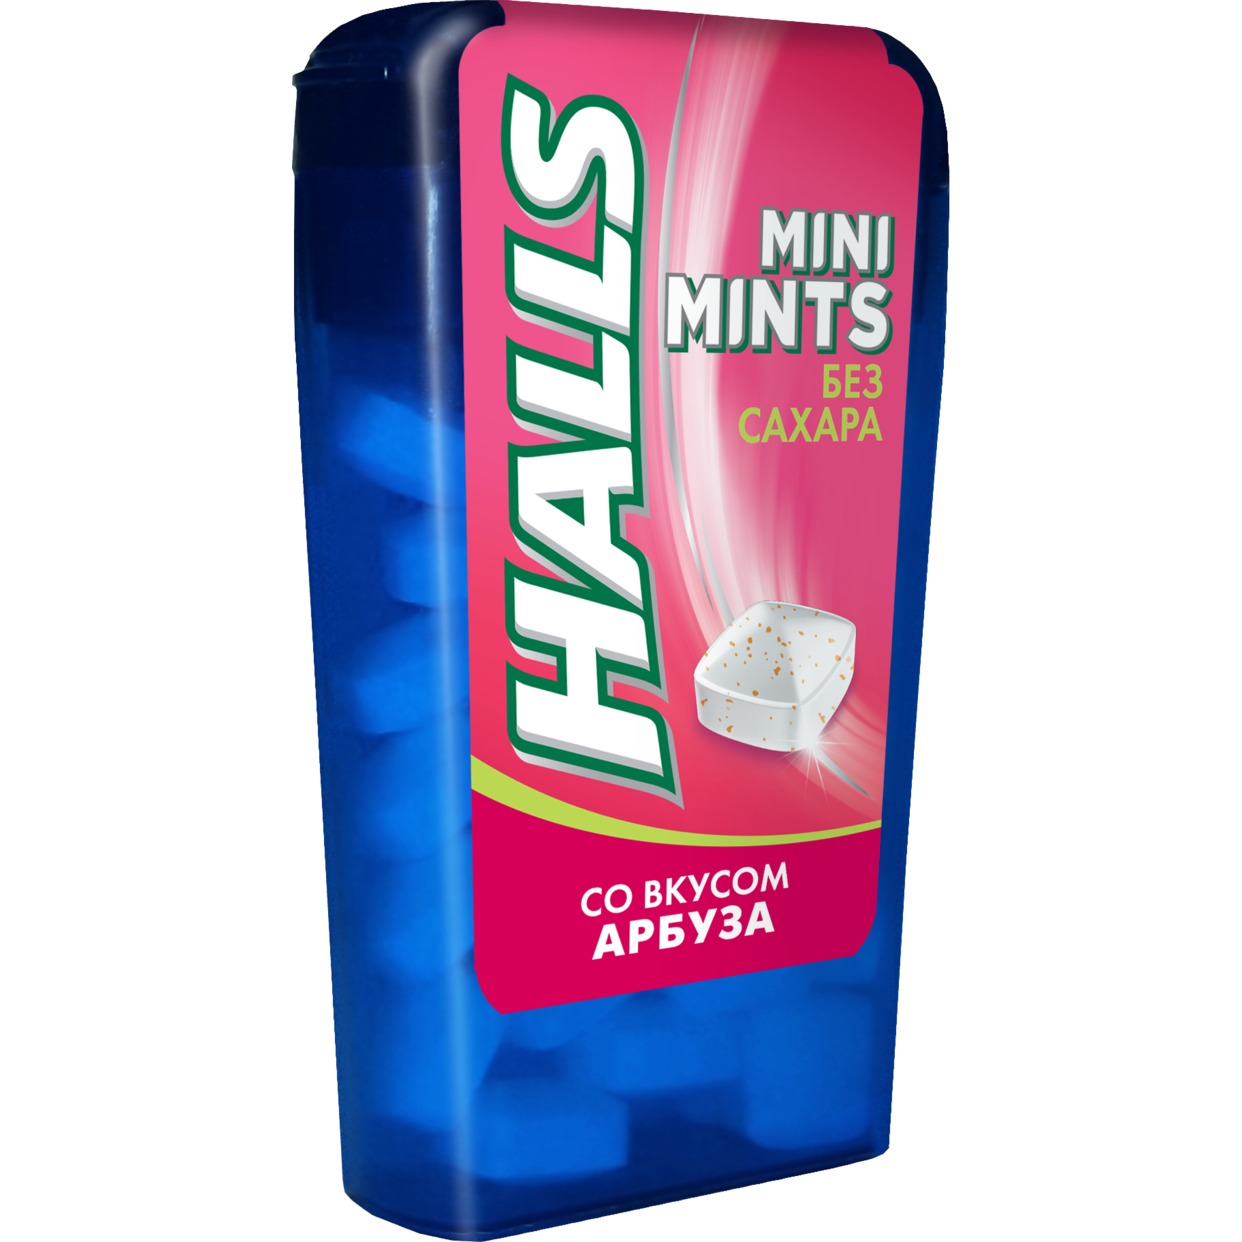 Конфеты Halls Mini Mints со вкусом арбуза без сахара 12.5г по акции в Пятерочке